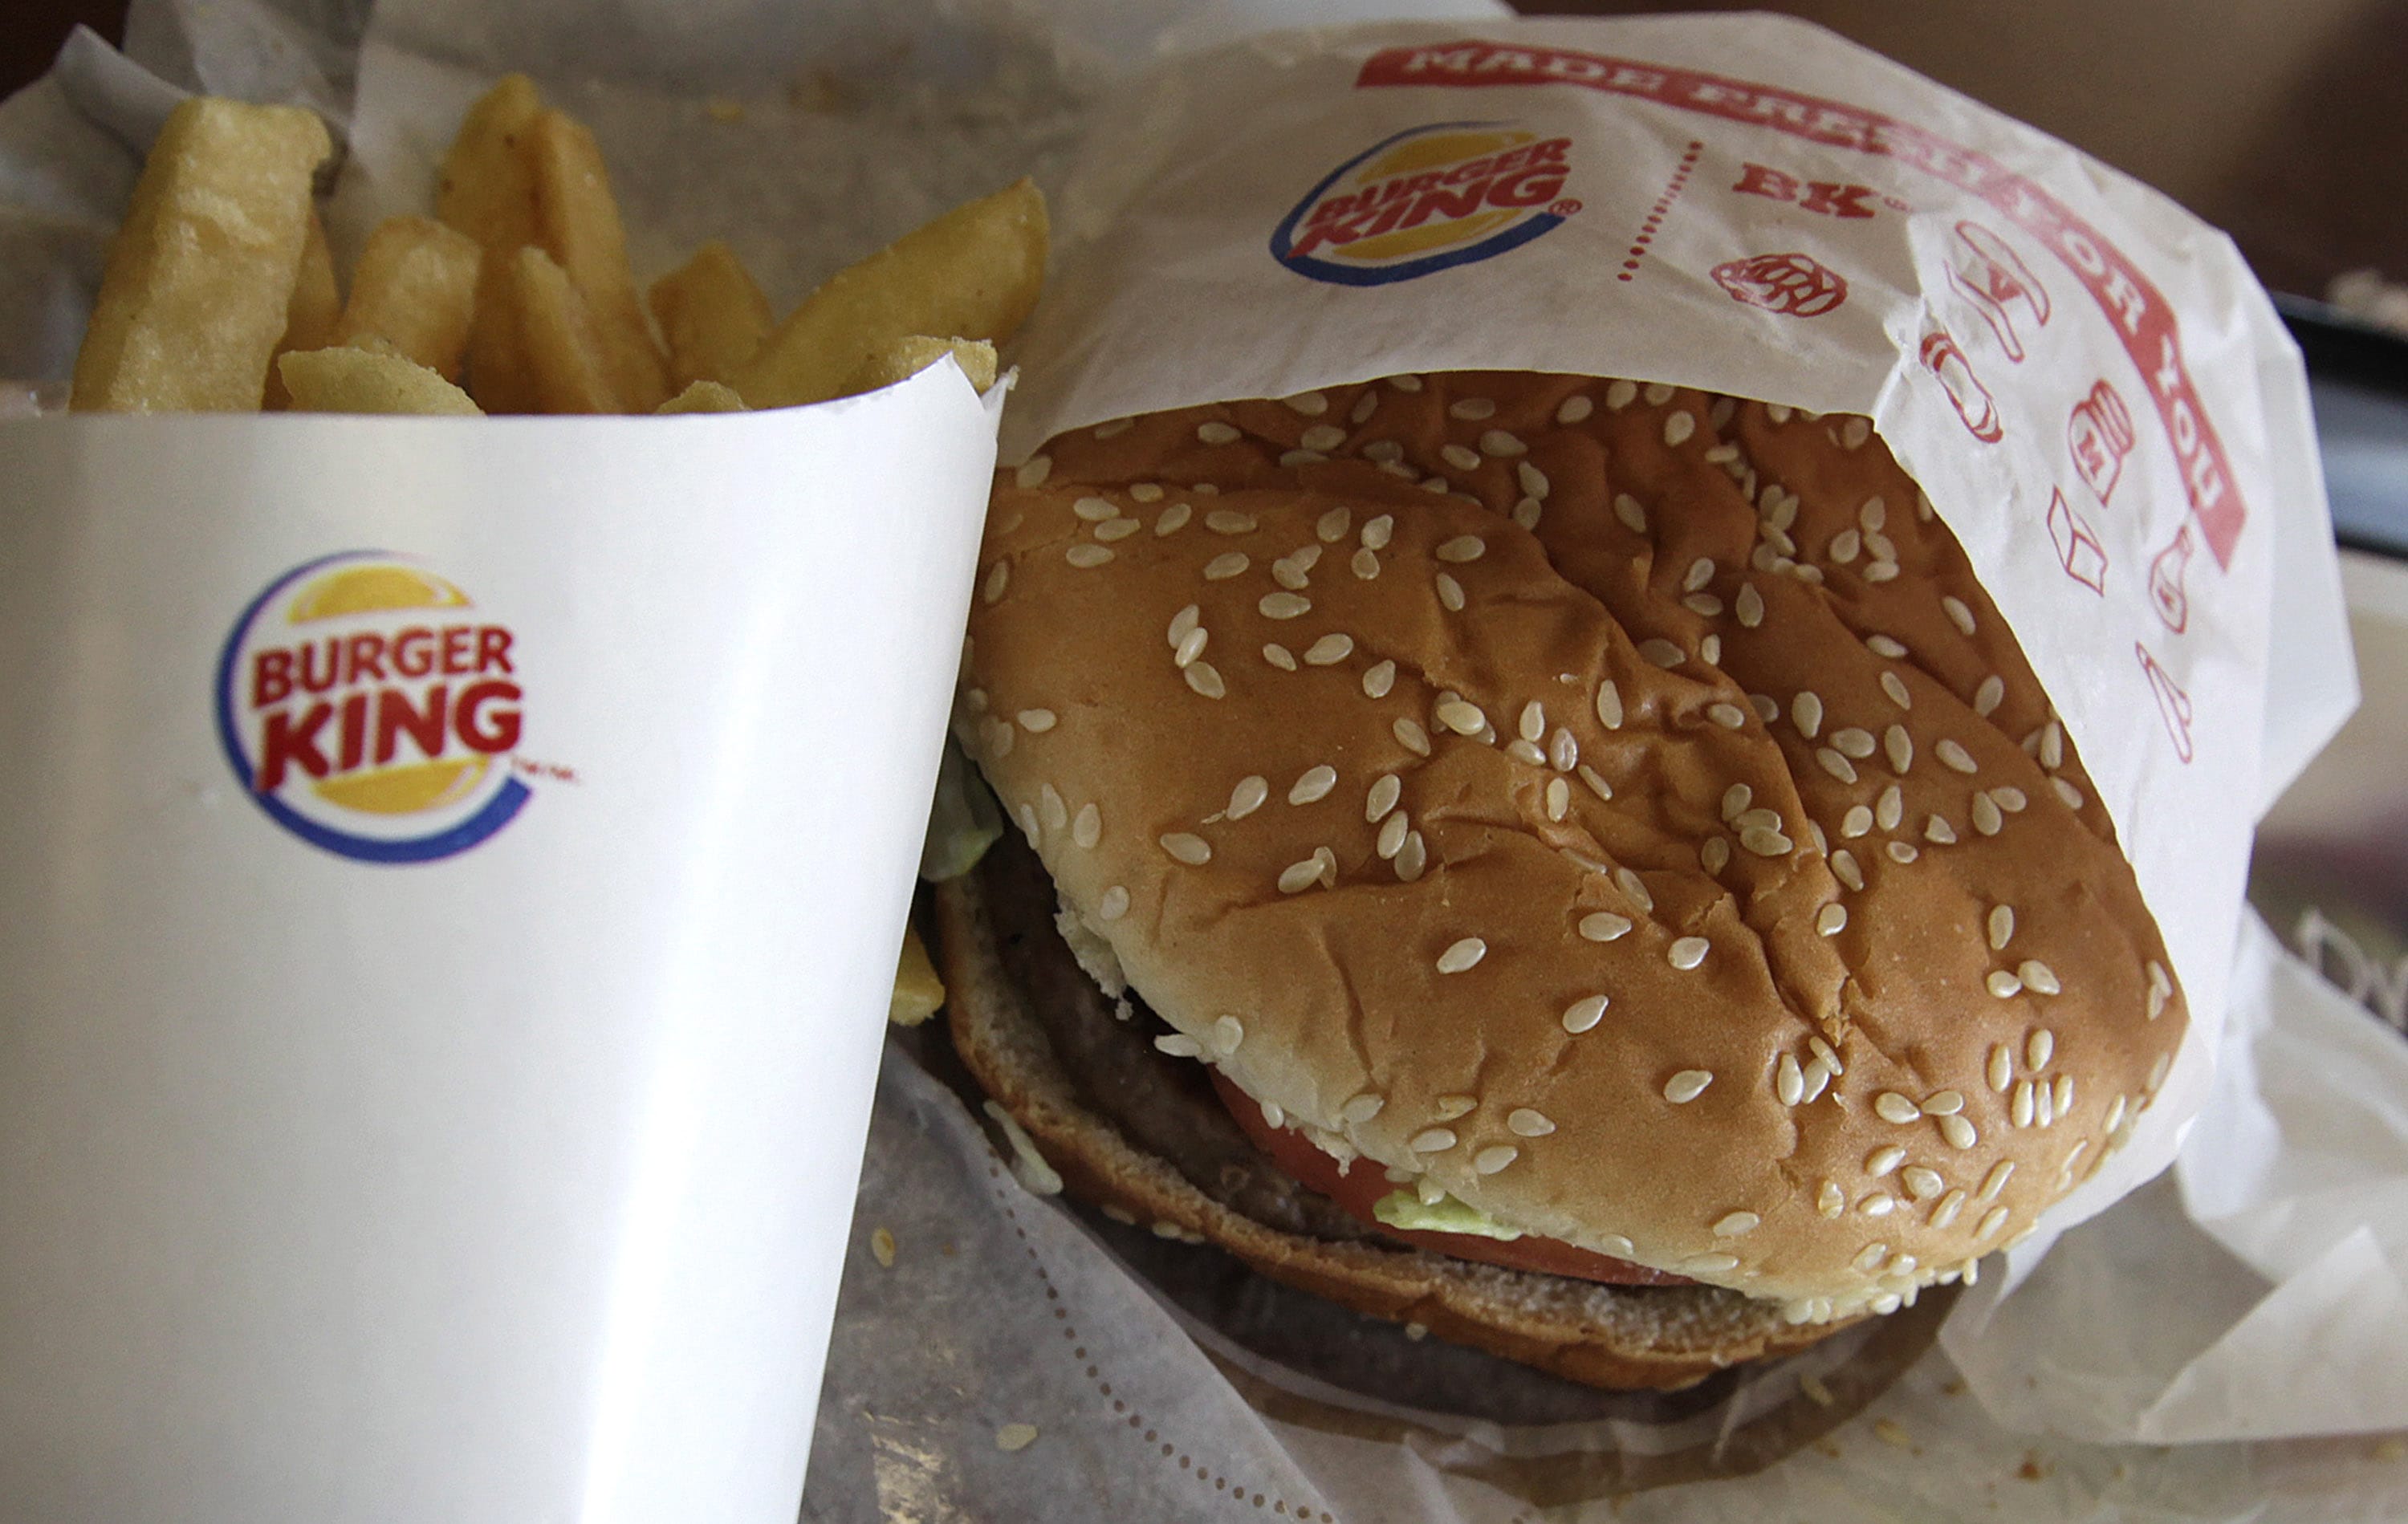 A burger and fries at a Burger King